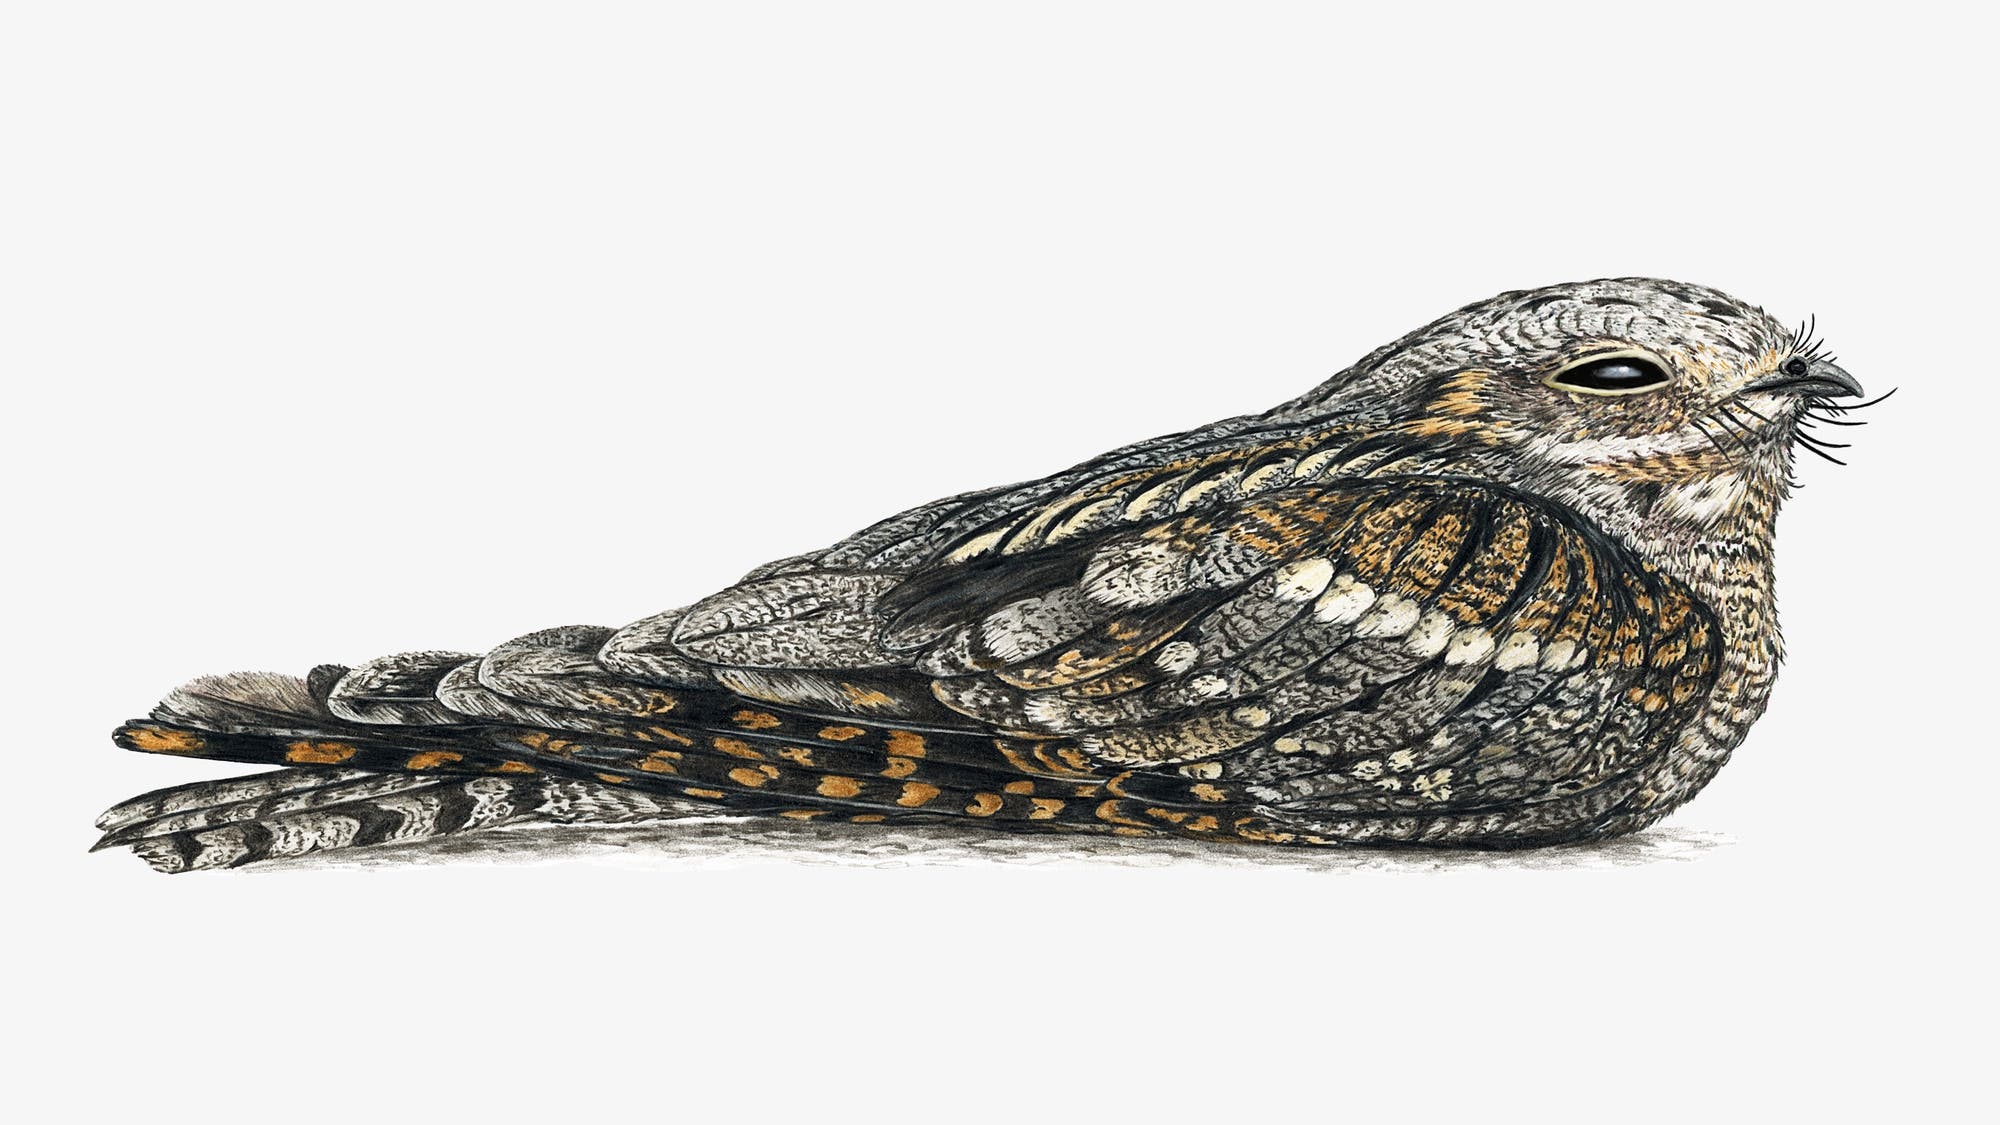 Buntstiftzeichnung eines Ziegenmelkers, der auf dem Boden sitzt. Der grau-schwarz-braune Vogel hat die Flügel angelegt, die Beine eingezogen und die Augen halb geschlossen.